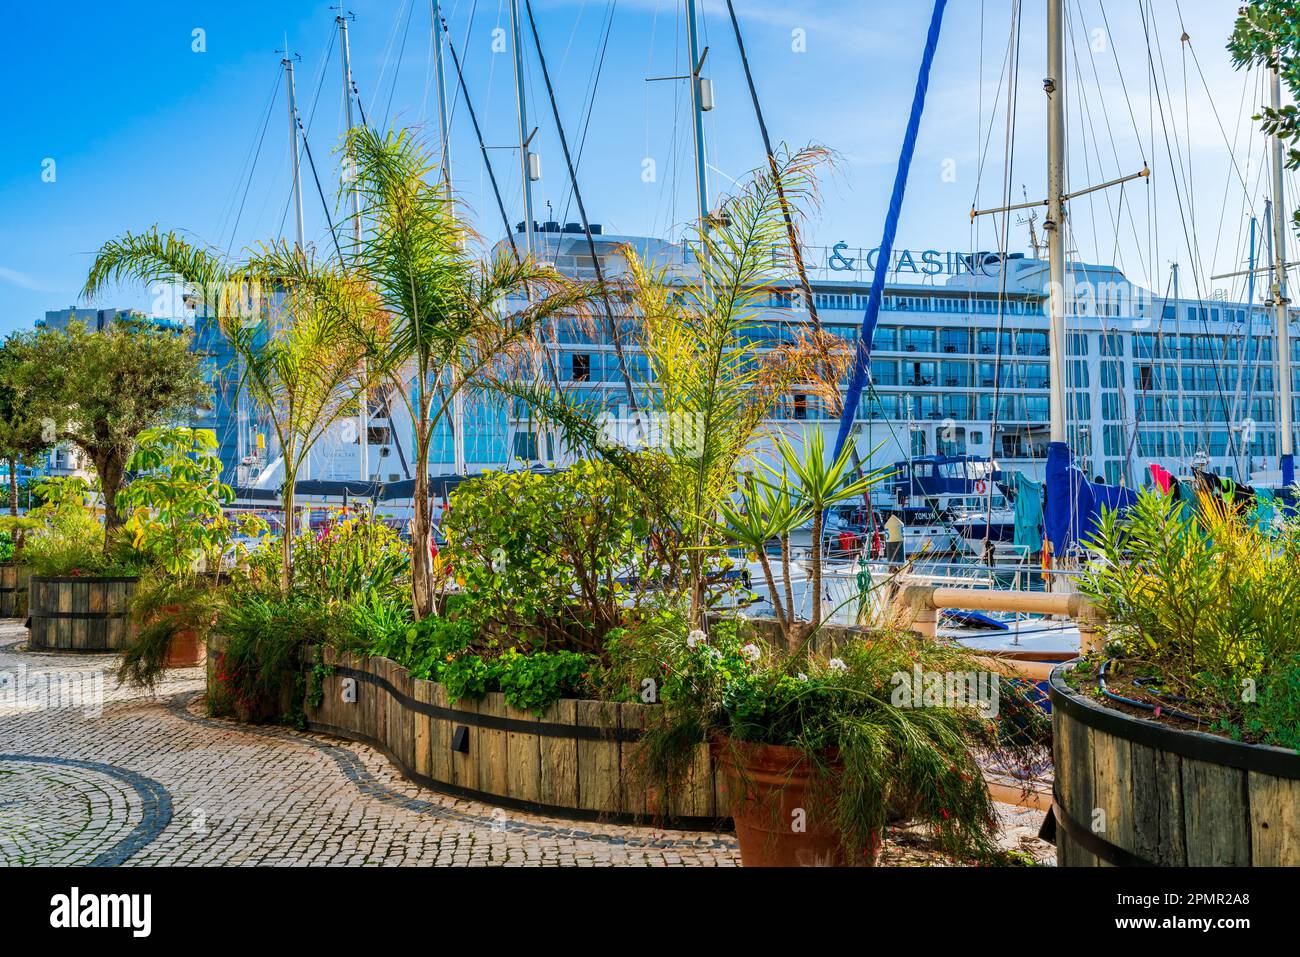 GIBRALTAR, Royaume-Uni - 10 MARS 2023 : Marina Bay, dans le village océanique de Gibraltar, est bordée d'appartements résidentiels, de bars et de restaurants Banque D'Images